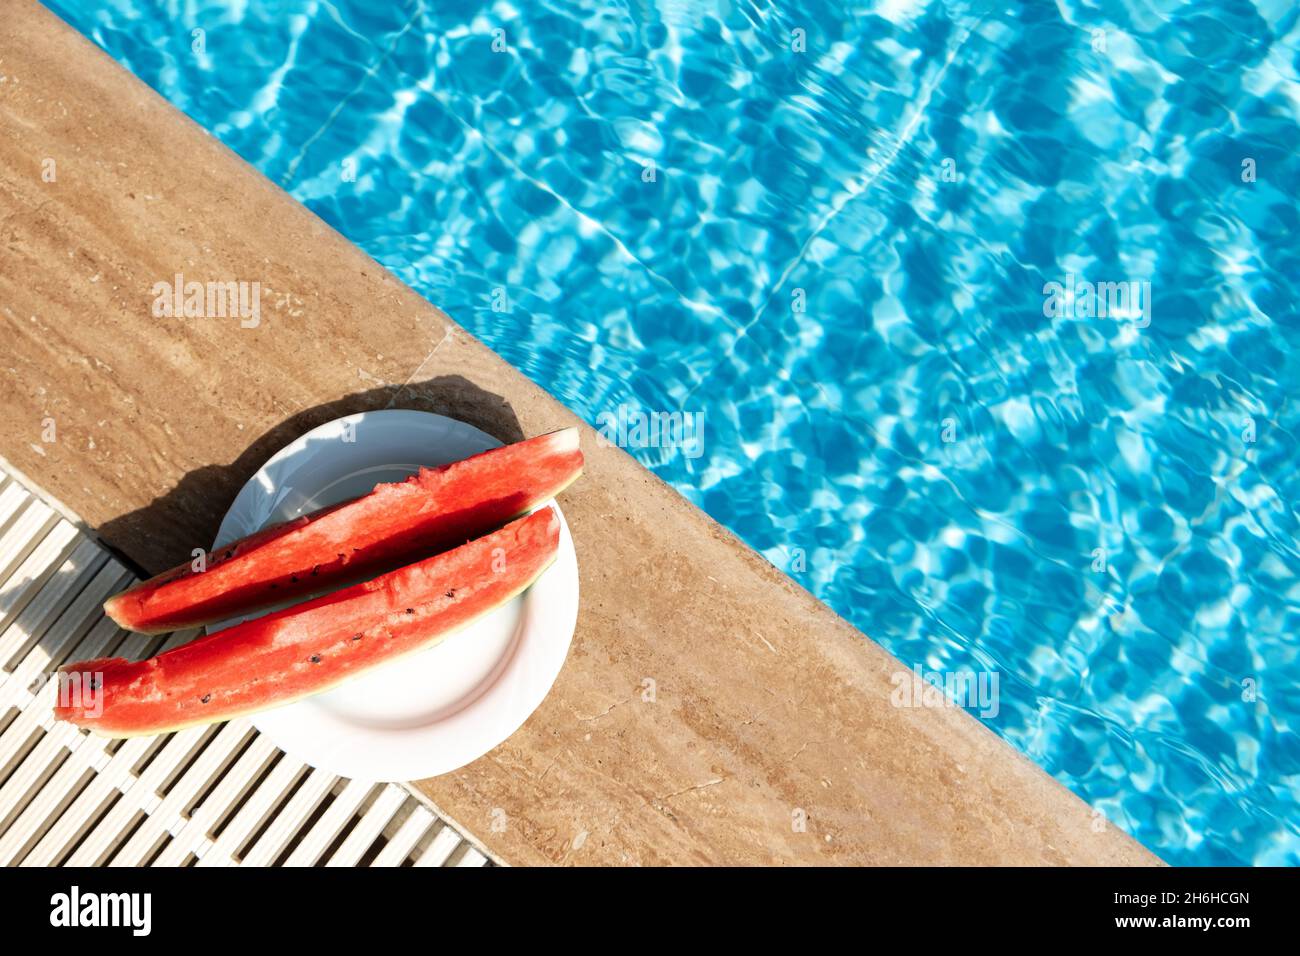 L'été avec du melon d'eau douce près de la piscine.Voyage d'été chaud, vacances et concept de vacances.Vue de dessus.Espace de copie - image Banque D'Images